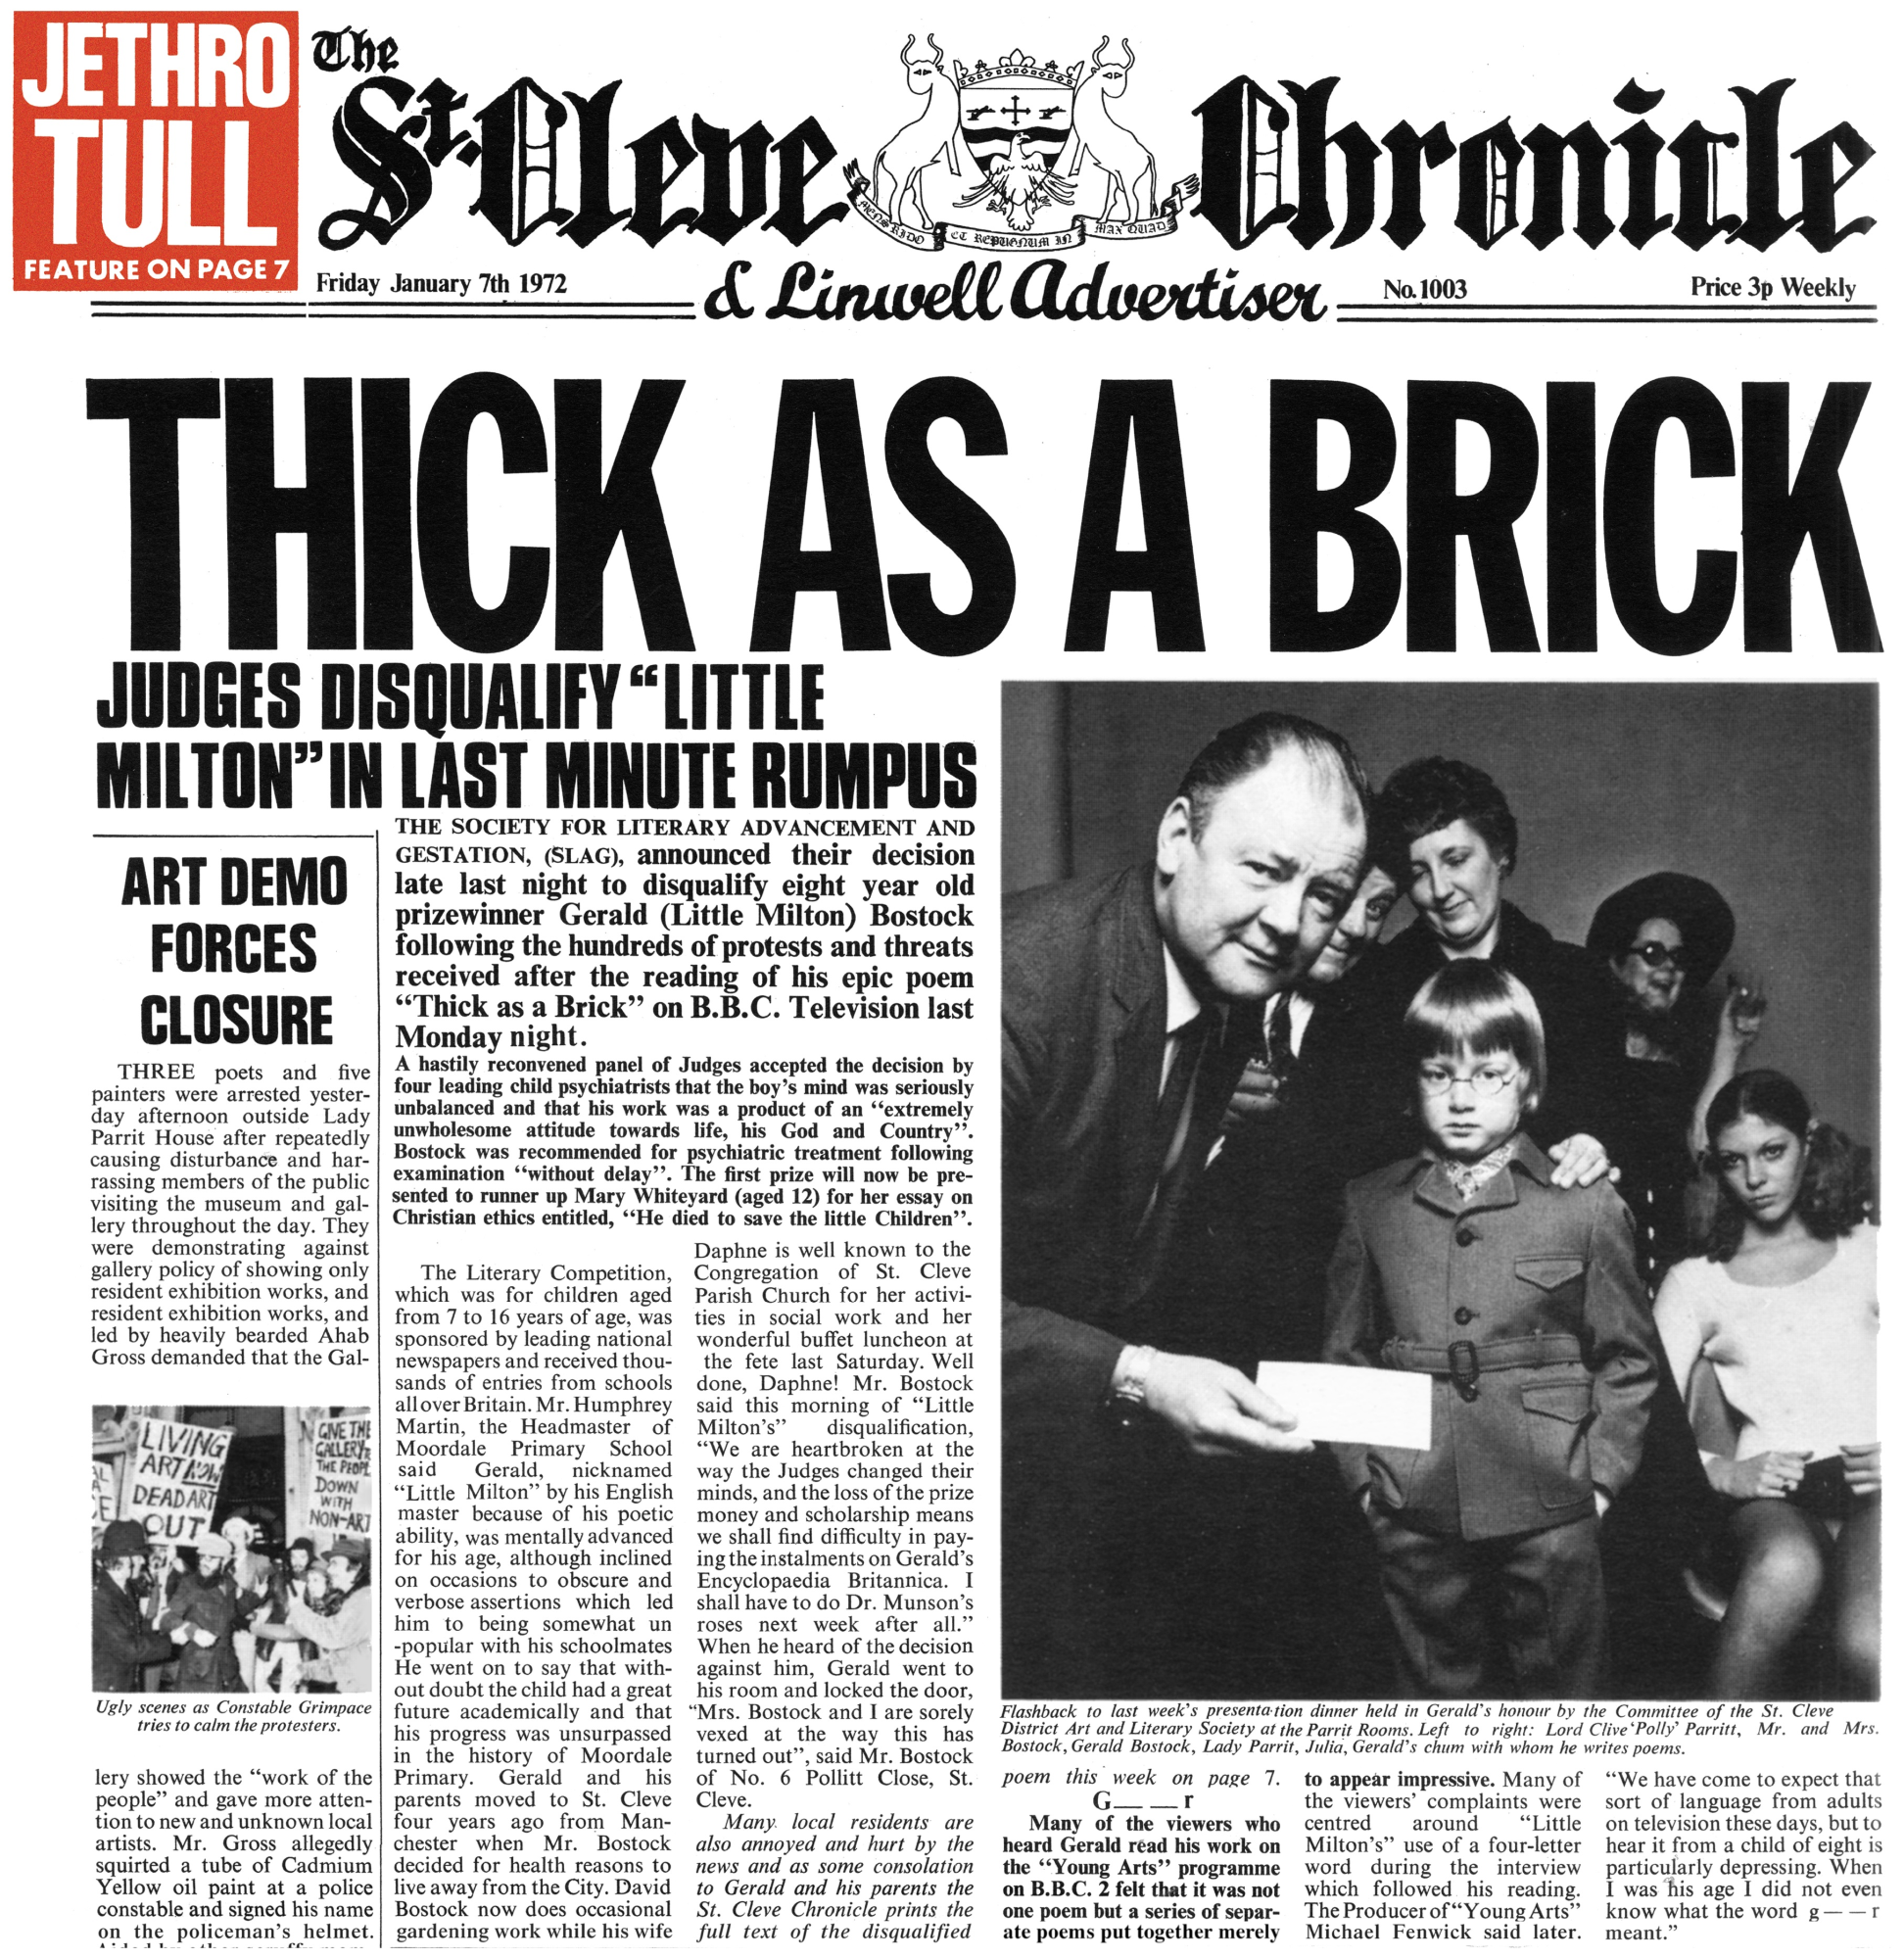 Vinile Jethro Tull - Thick As A Brick (50Th Anniversary Edition) NUOVO SIGILLATO, EDIZIONE DEL 29/07/2022 SUBITO DISPONIBILE